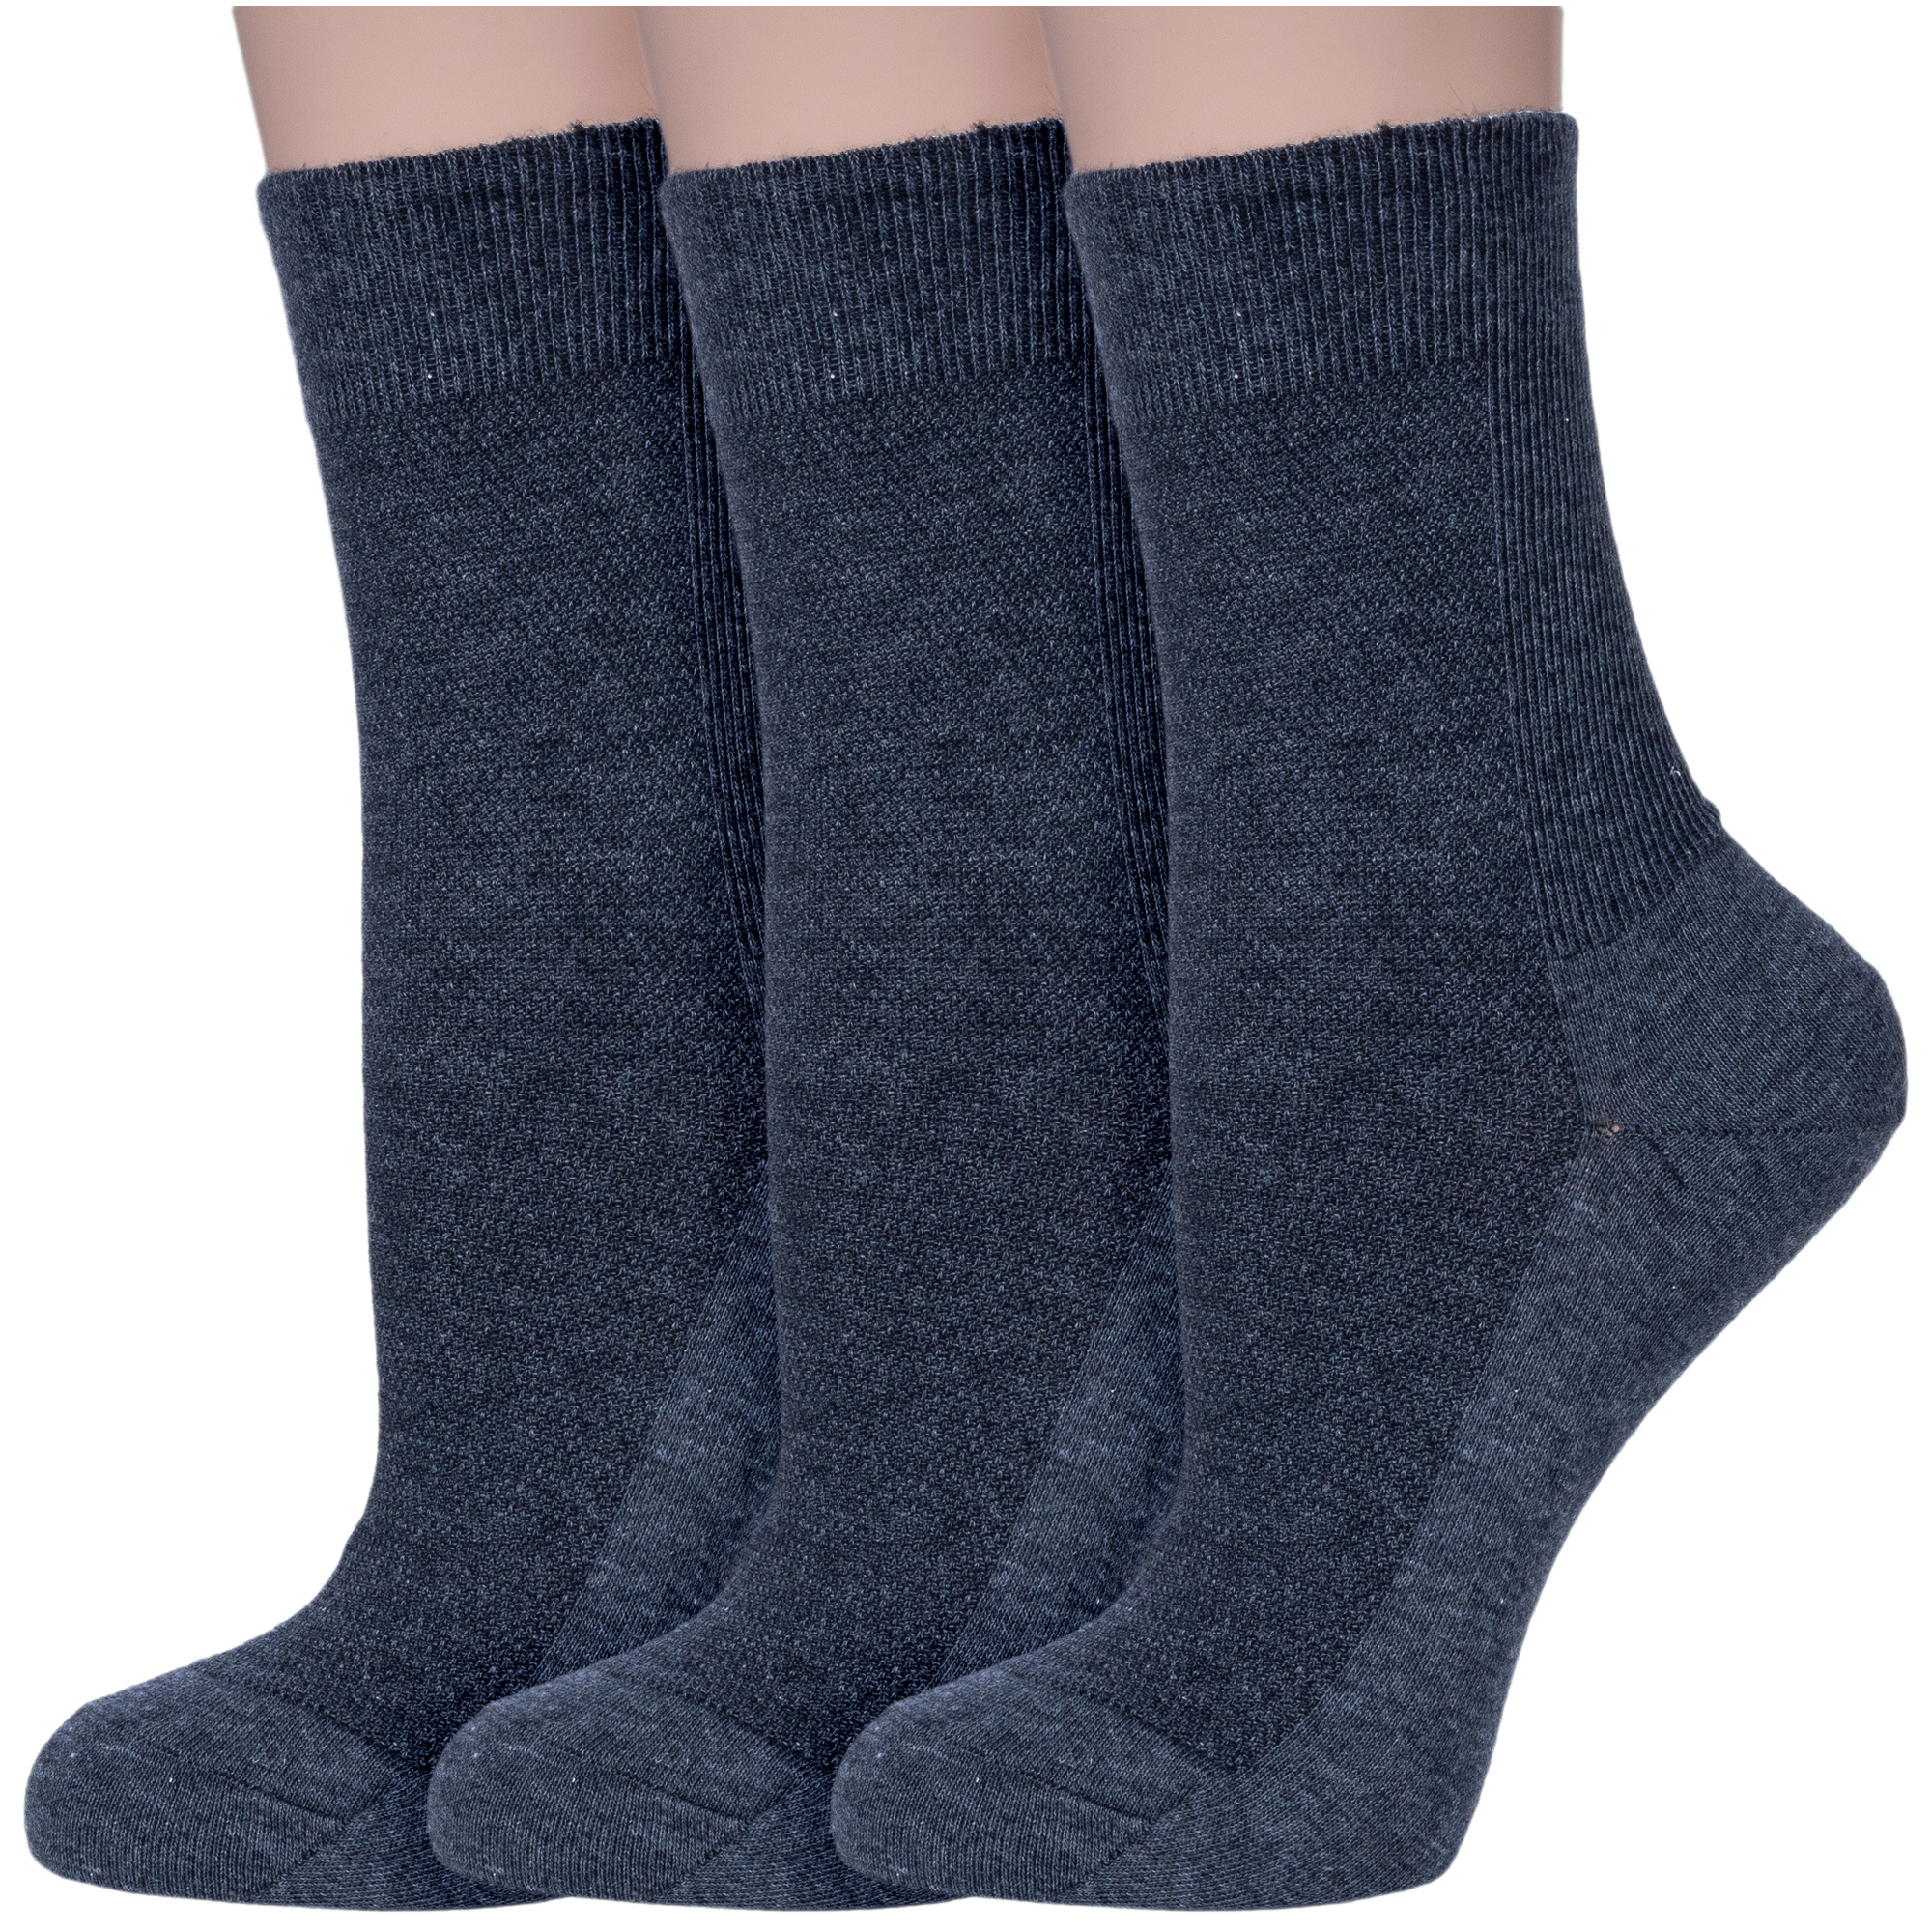 Комплект носков женских Dr Feet 3-15DF8 серых 25